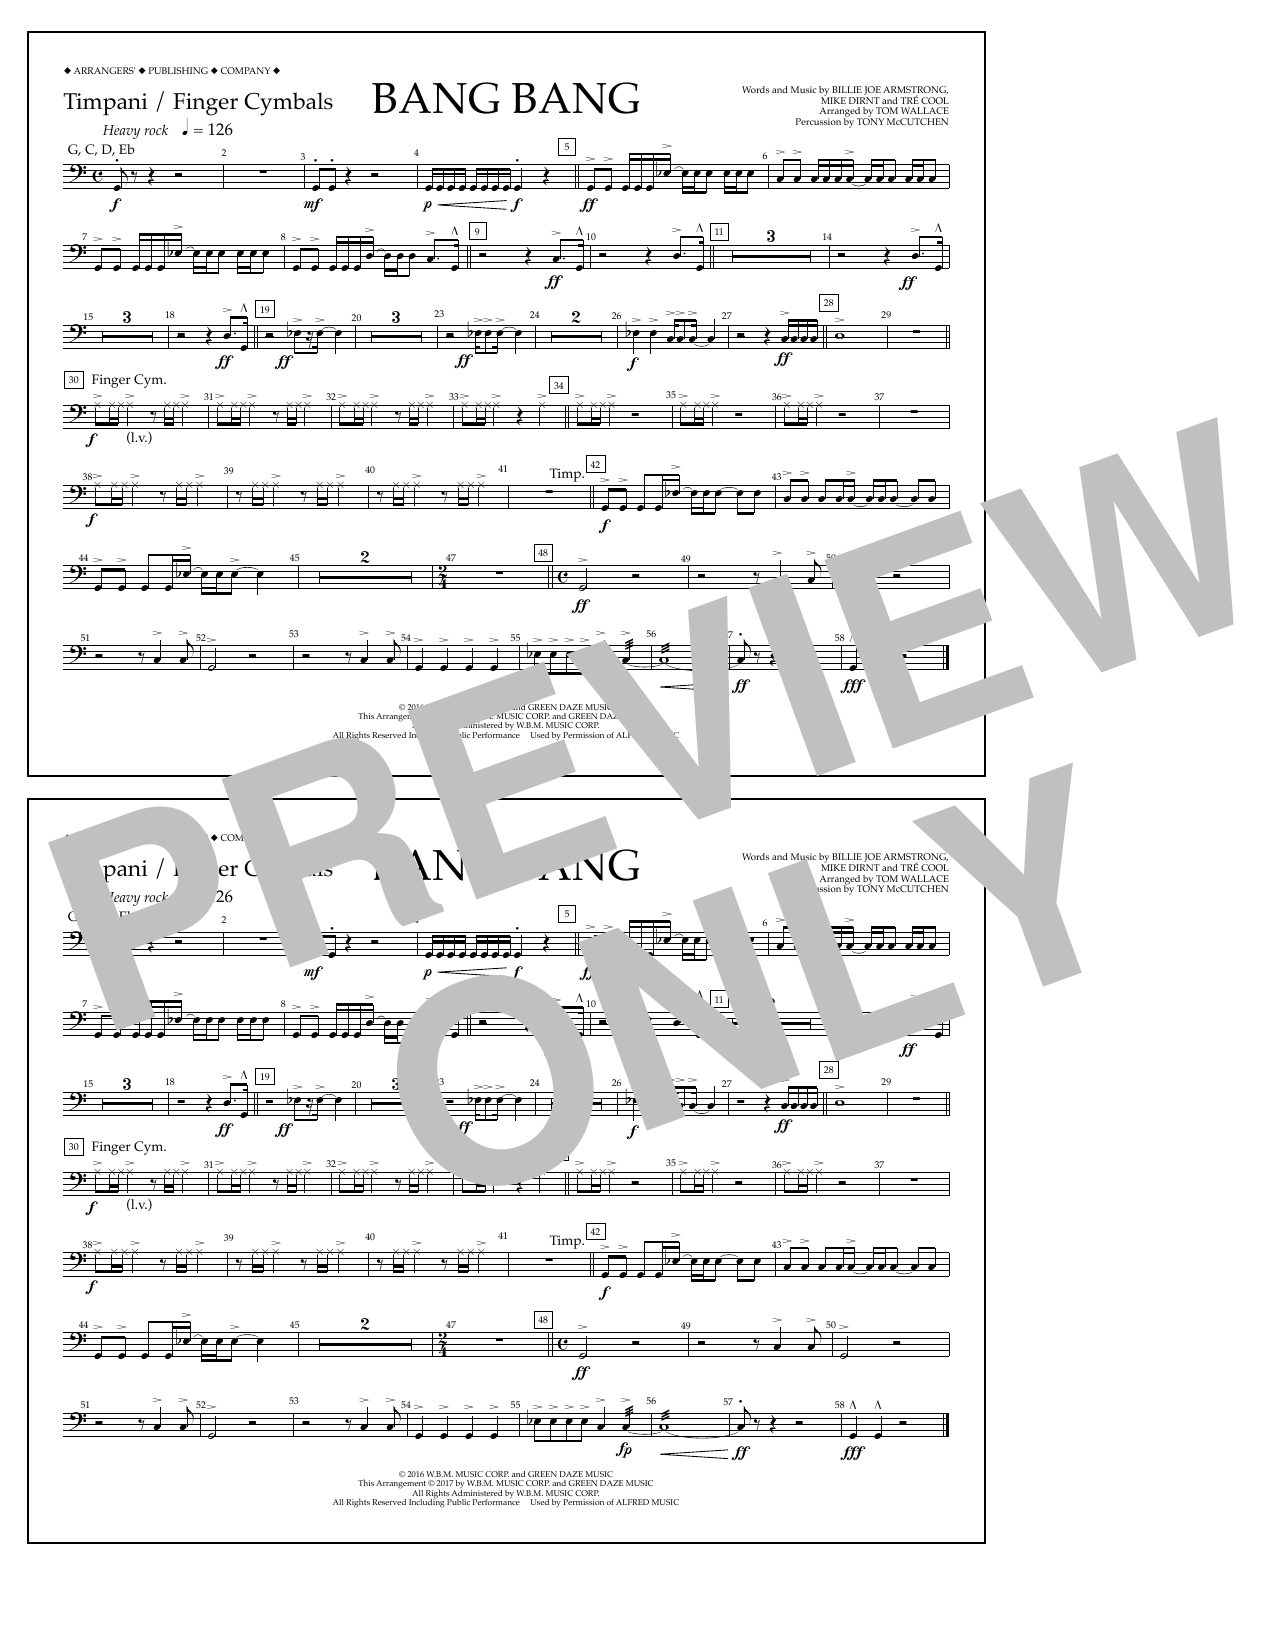 Tom Wallace Bang Bang - Timpani/Finger Cym. Sheet Music Notes & Chords for Marching Band - Download or Print PDF